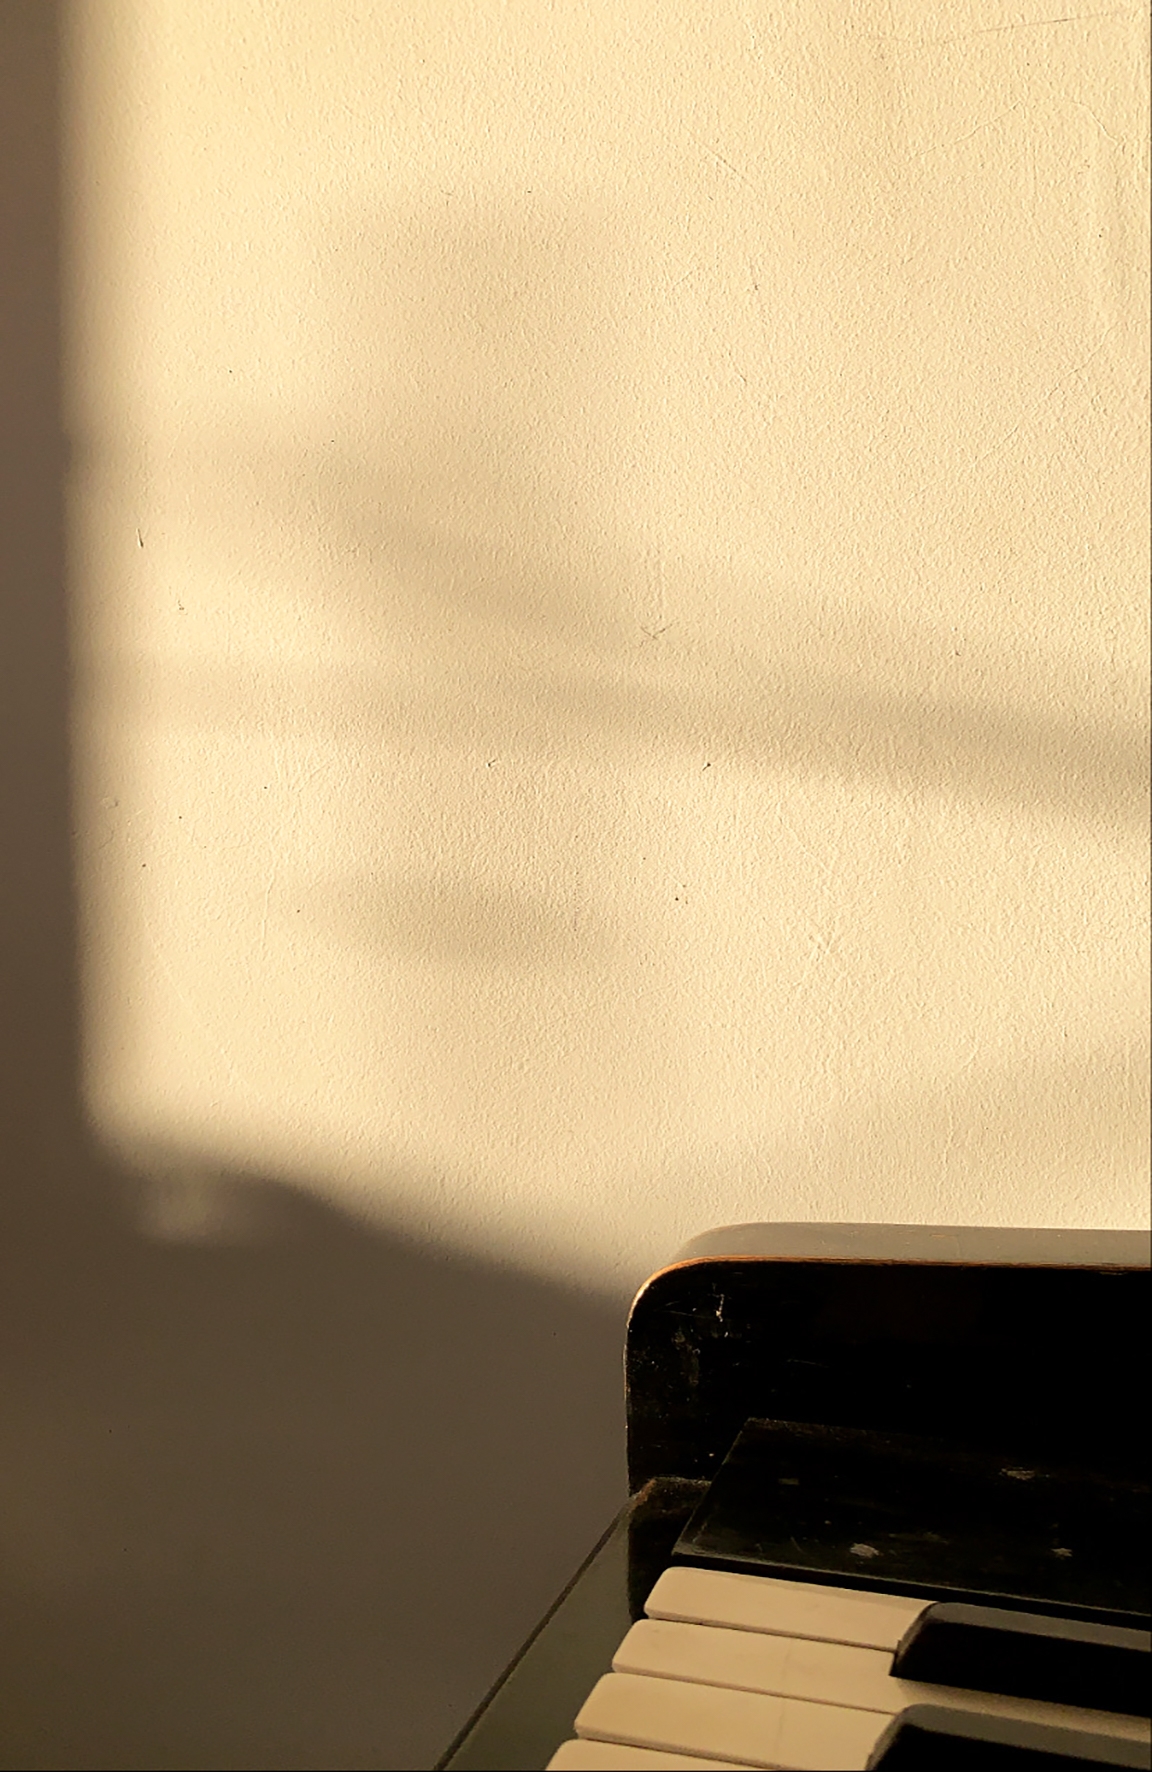 La dimensione tempo vissuta nel quotidiano.
Le sfere di un tradizionale orologio, un’ombra sul muro, un display digitale? Quale quadrante ci restituisce, nella vita normale, la percezione del tempo che passa, dalla clessidra allo Swatch, dalla meridiana allo schermo dello smartphone.